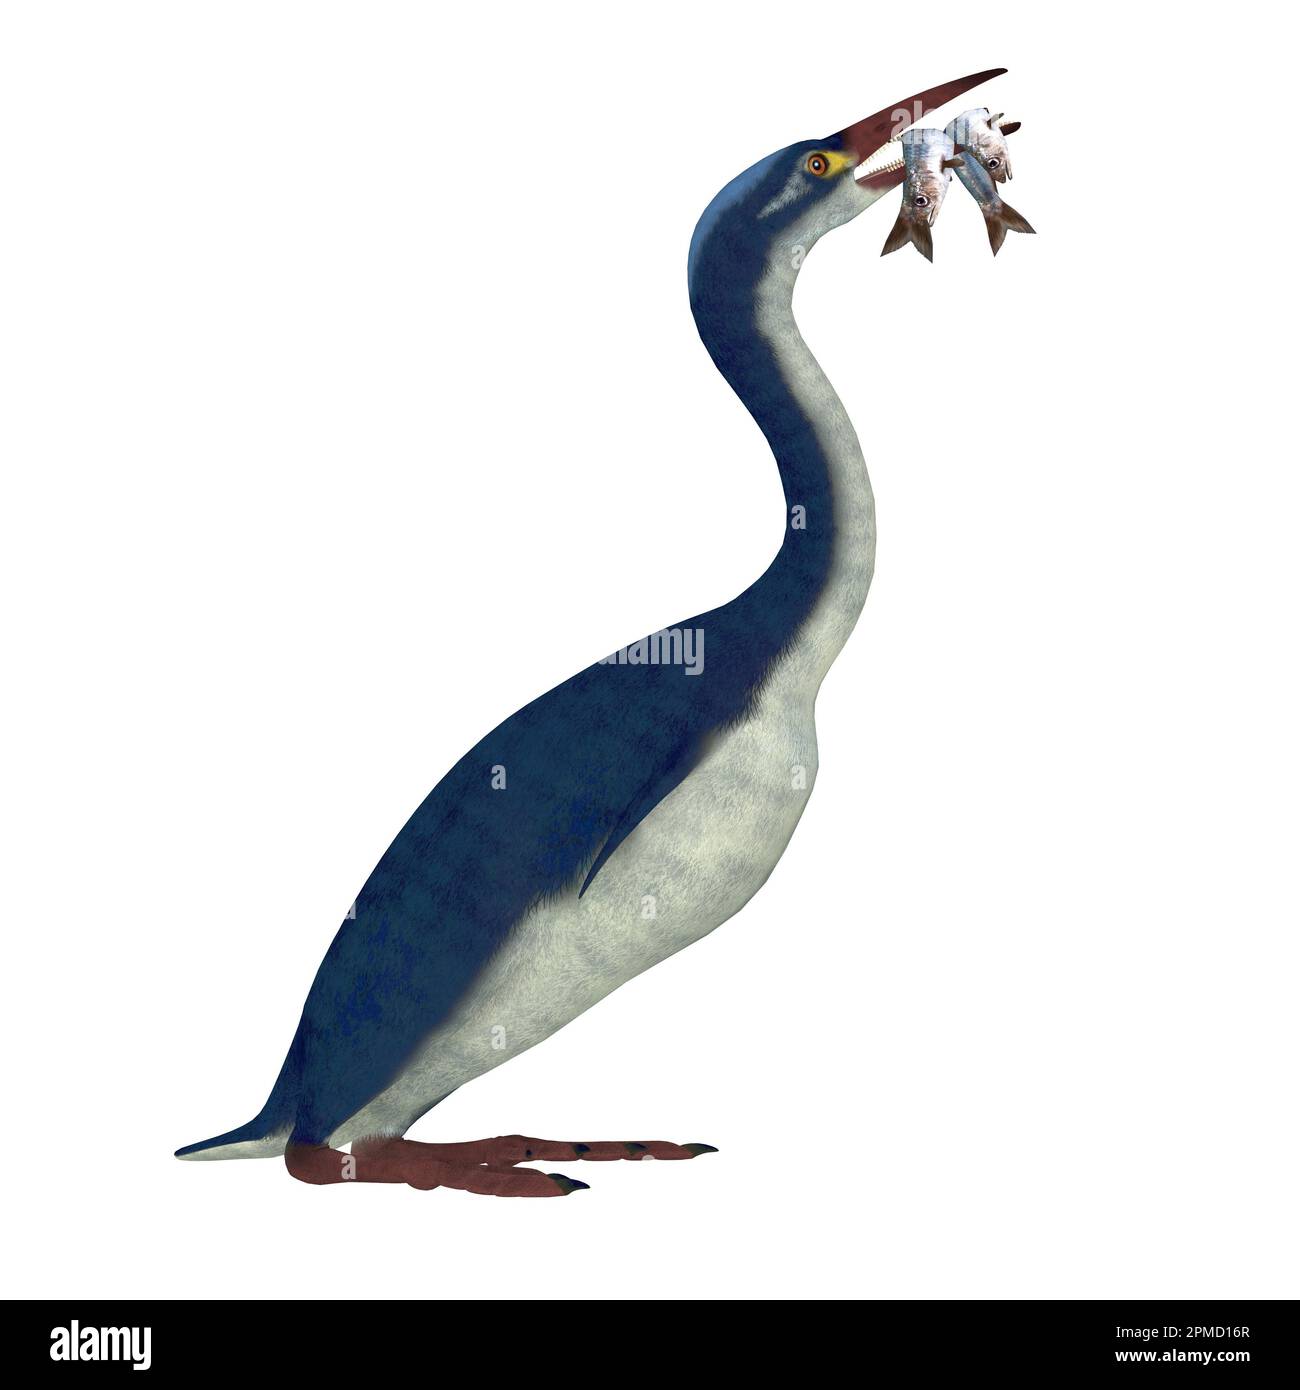 Hesperornis es un género de aves acuáticas no voladora que vivió en el período Cretácico. Foto de stock